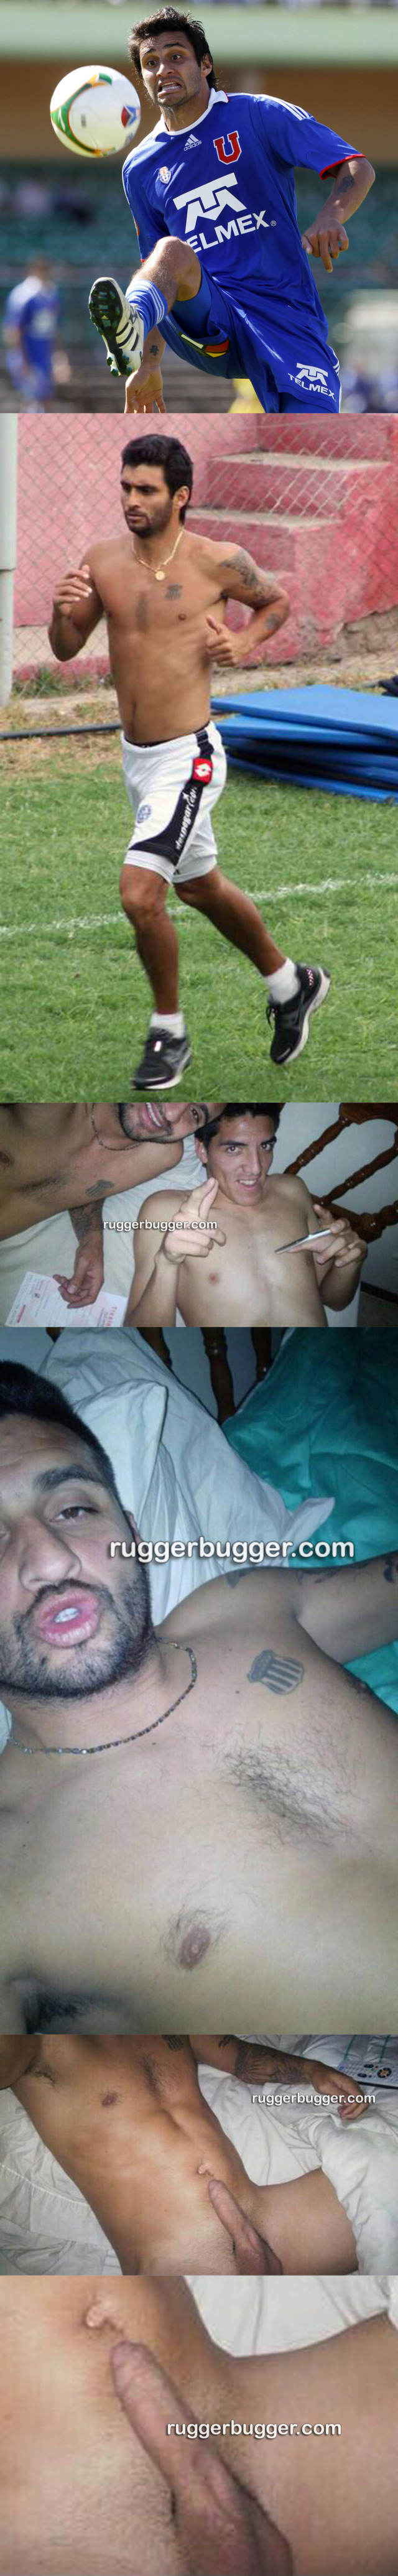 footballer carlos bueno naked dick selfie